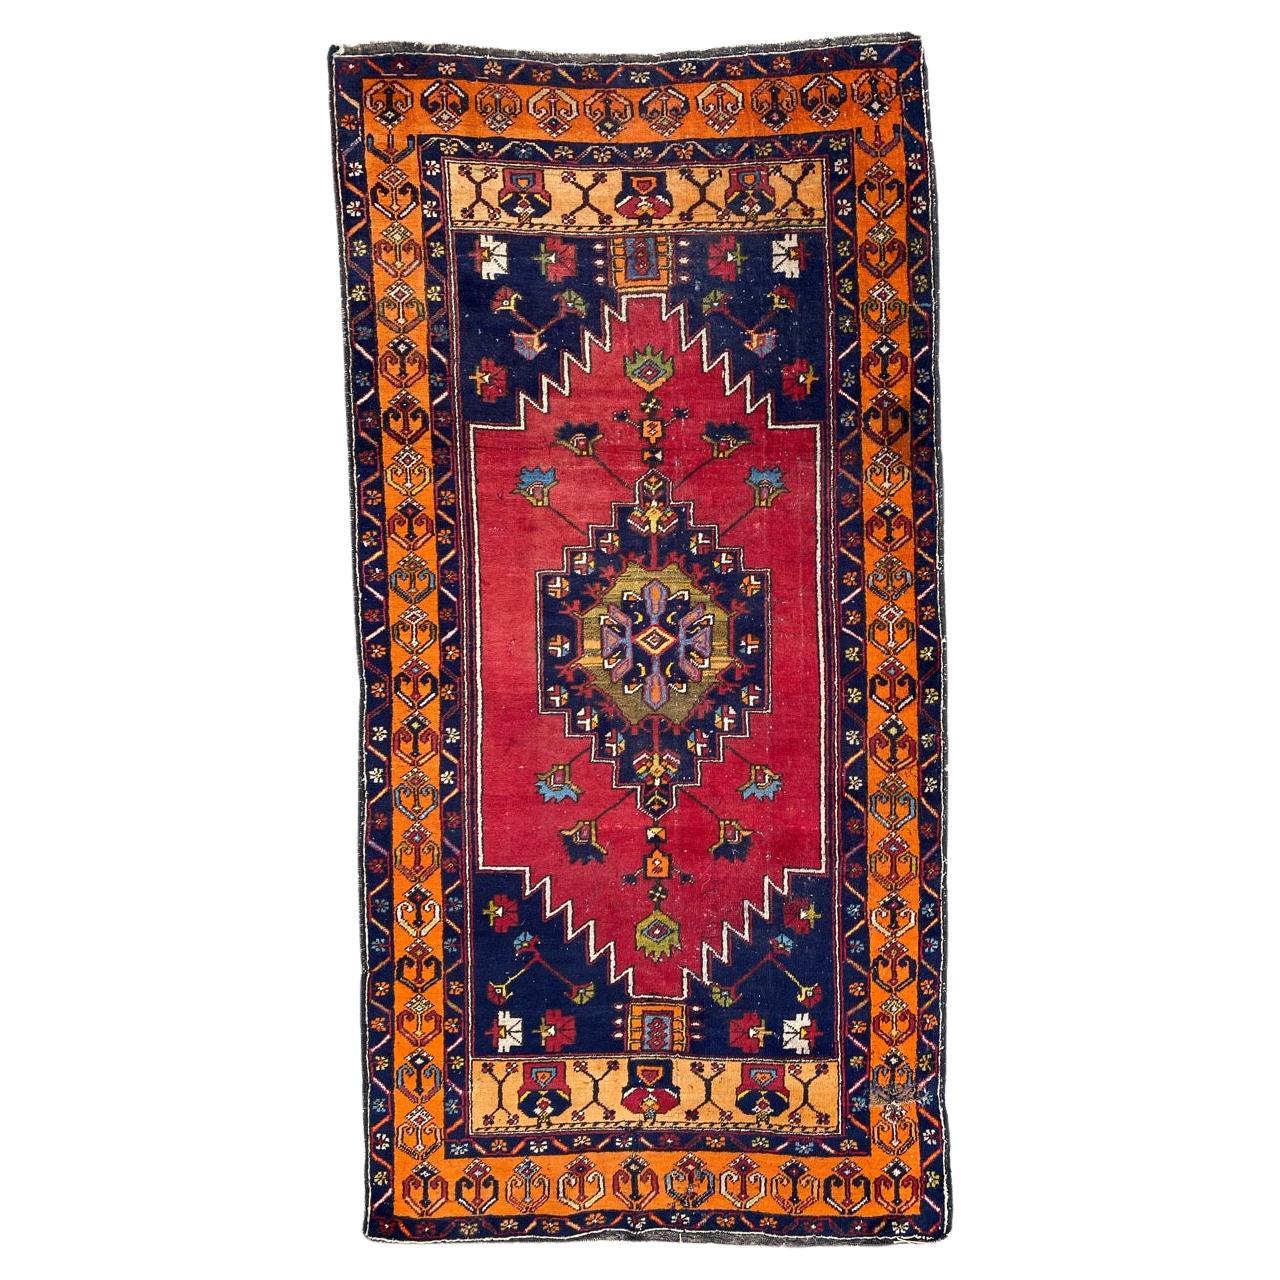 Bobyrugs schöner türkischer Vintage-Teppich